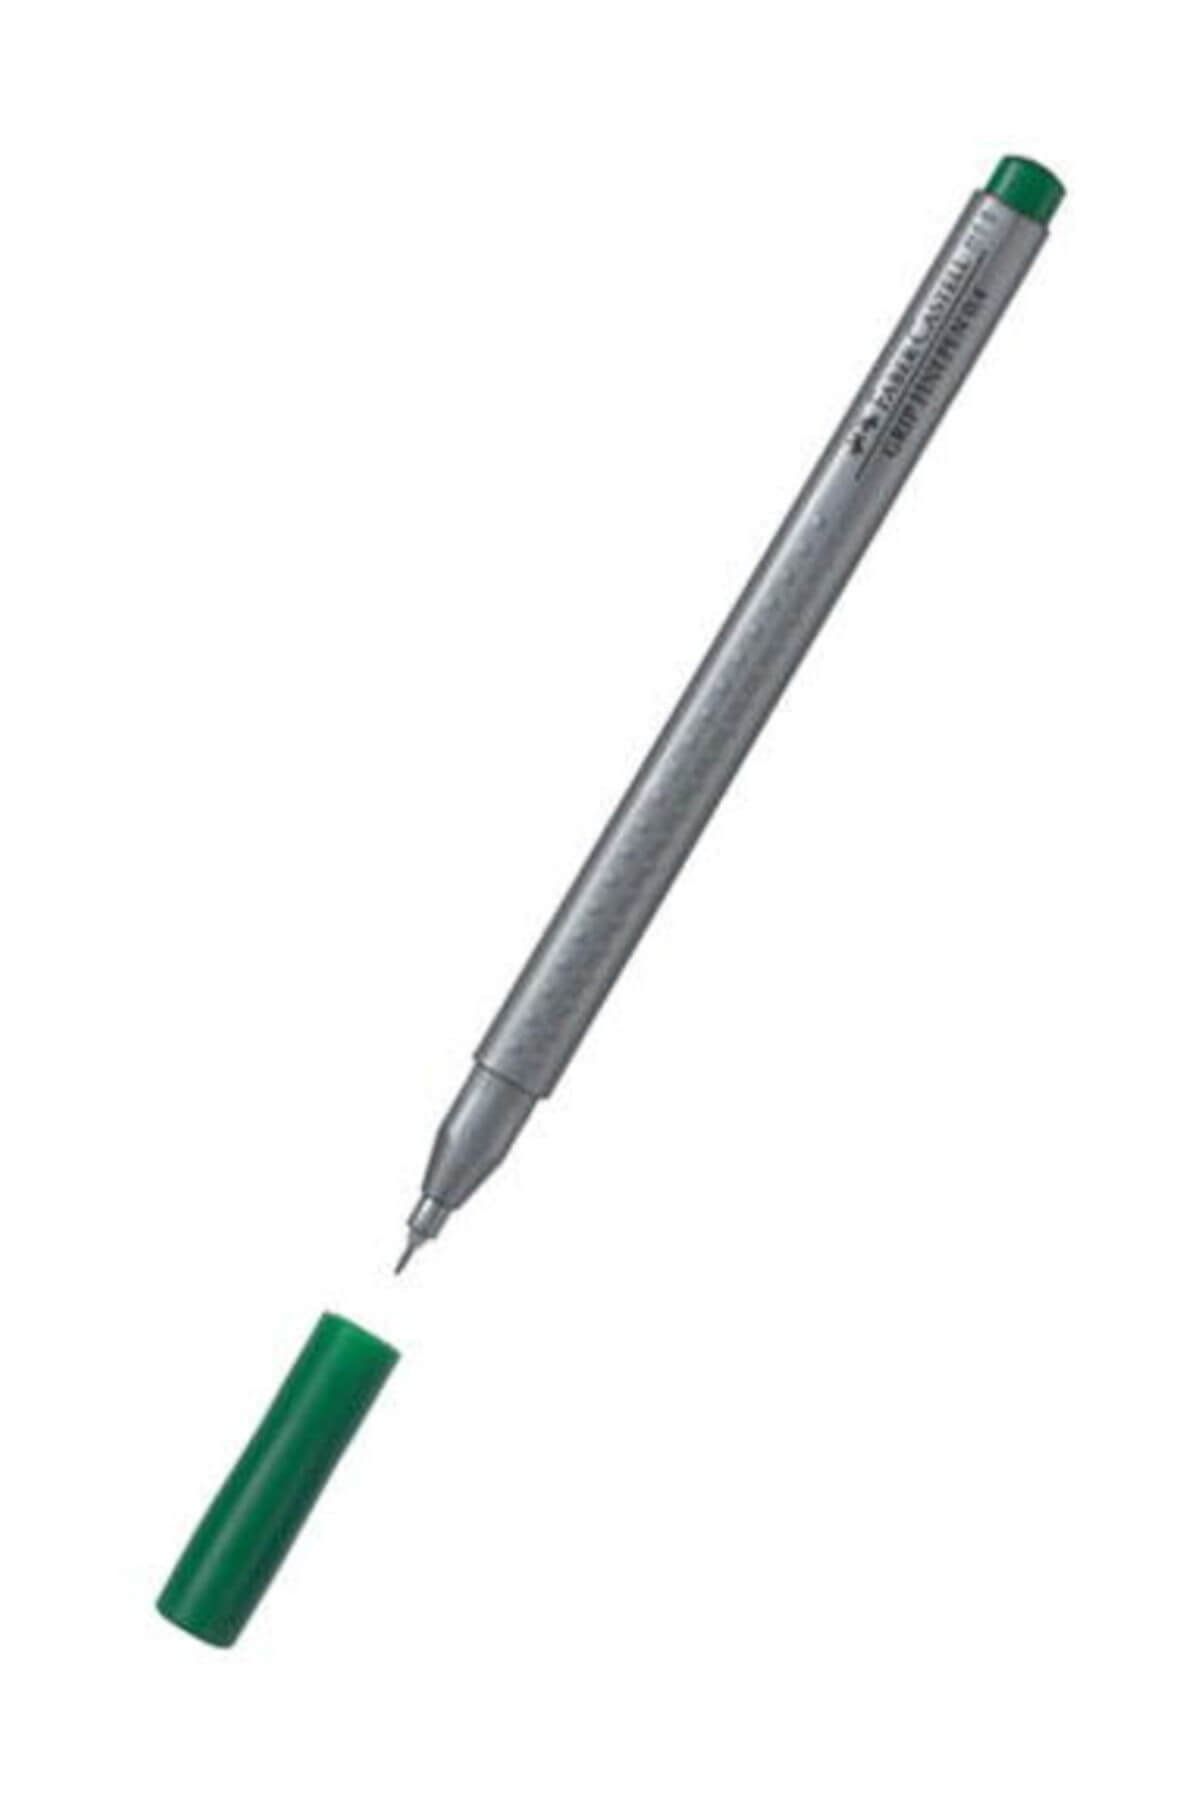 Faber Castell Grip Finepen İnce Uçlu Kalem 0.4 mm Yeşil